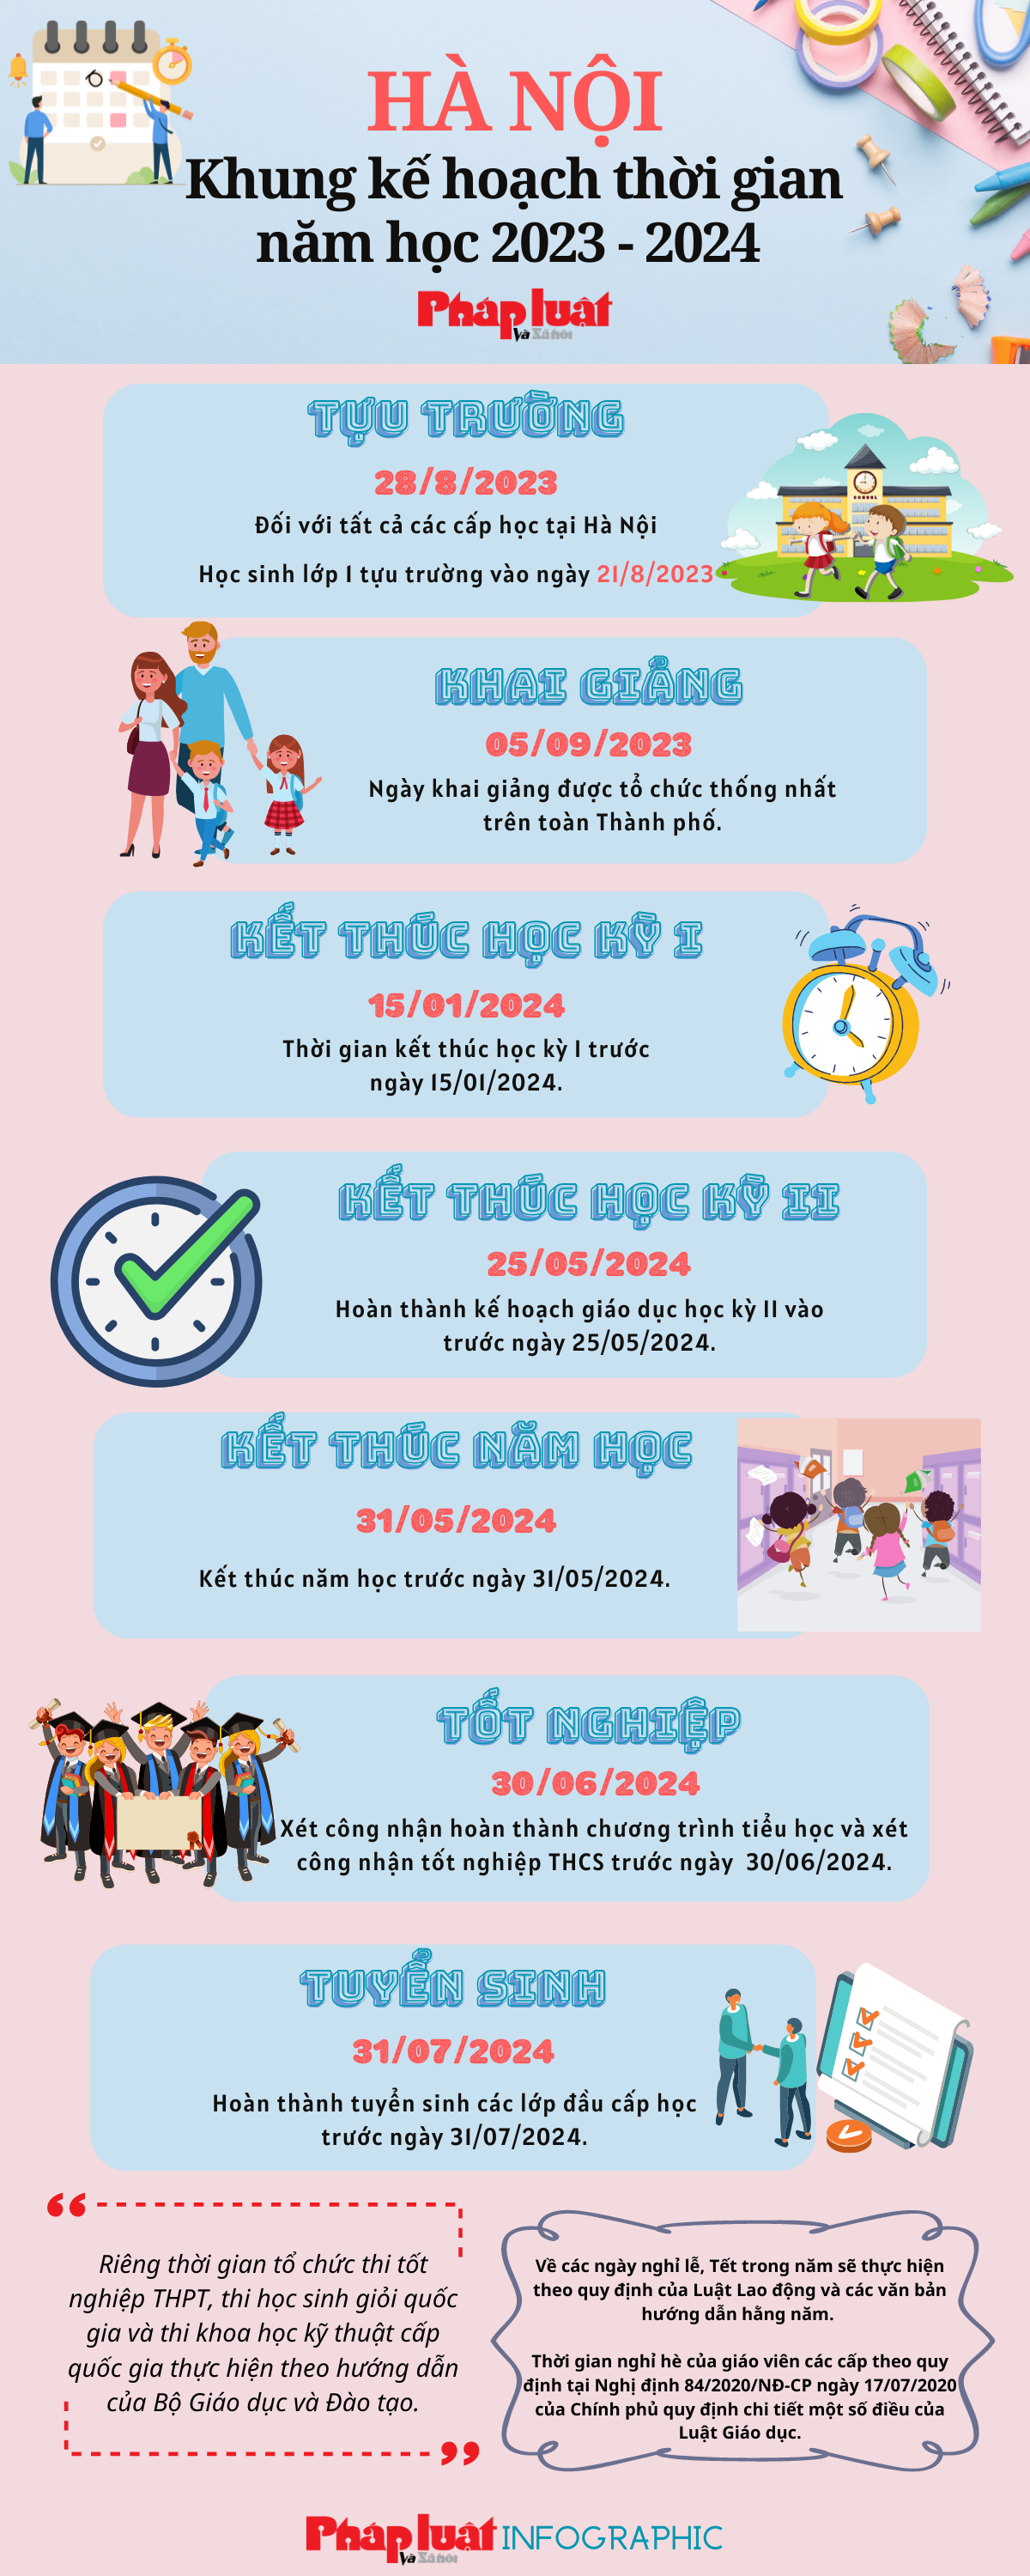 Khung kế hoạch thời gian năm học 2023 2024 tại Hà Nội